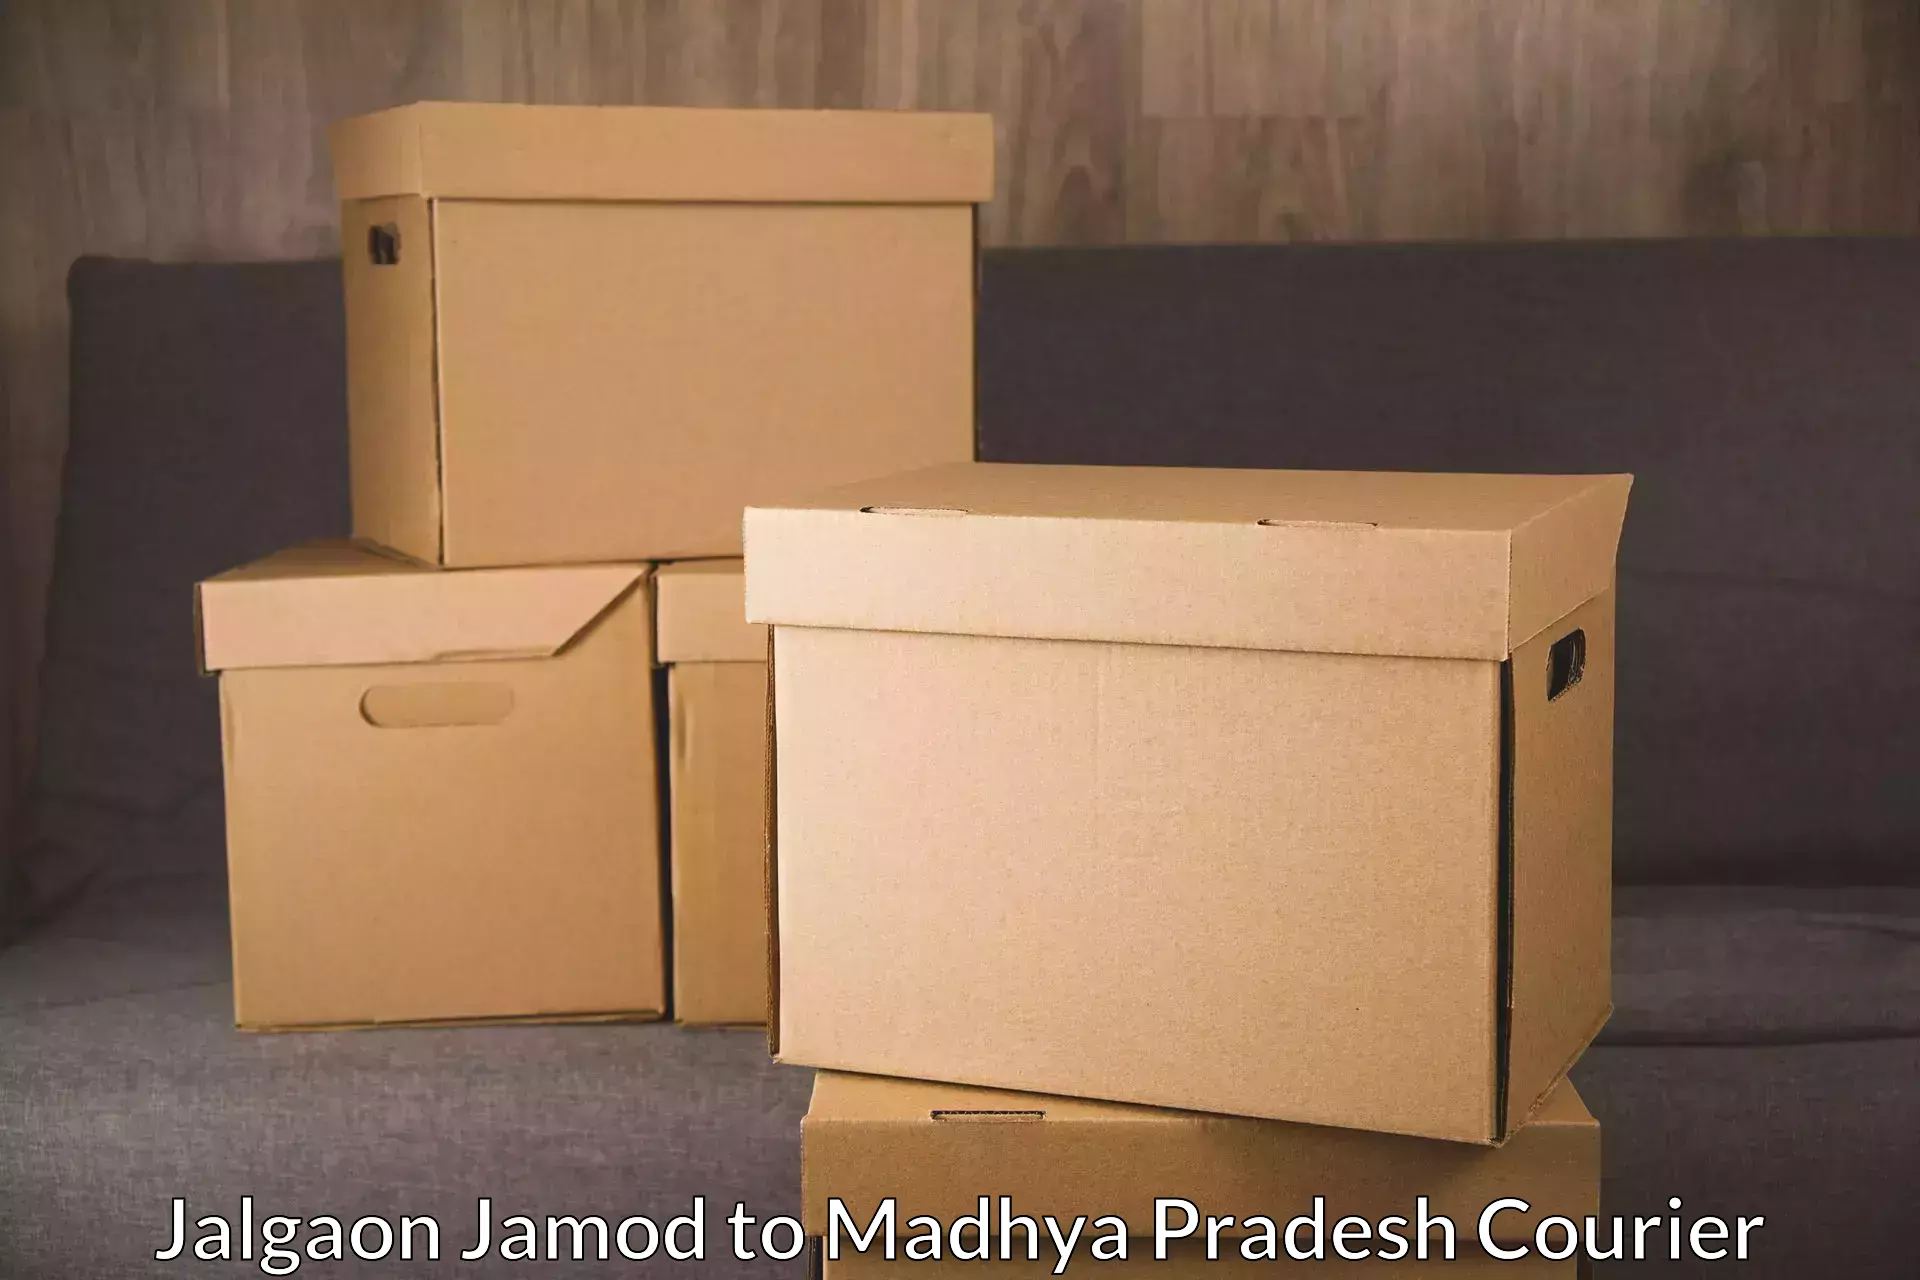 Express package transport Jalgaon Jamod to Vidisha